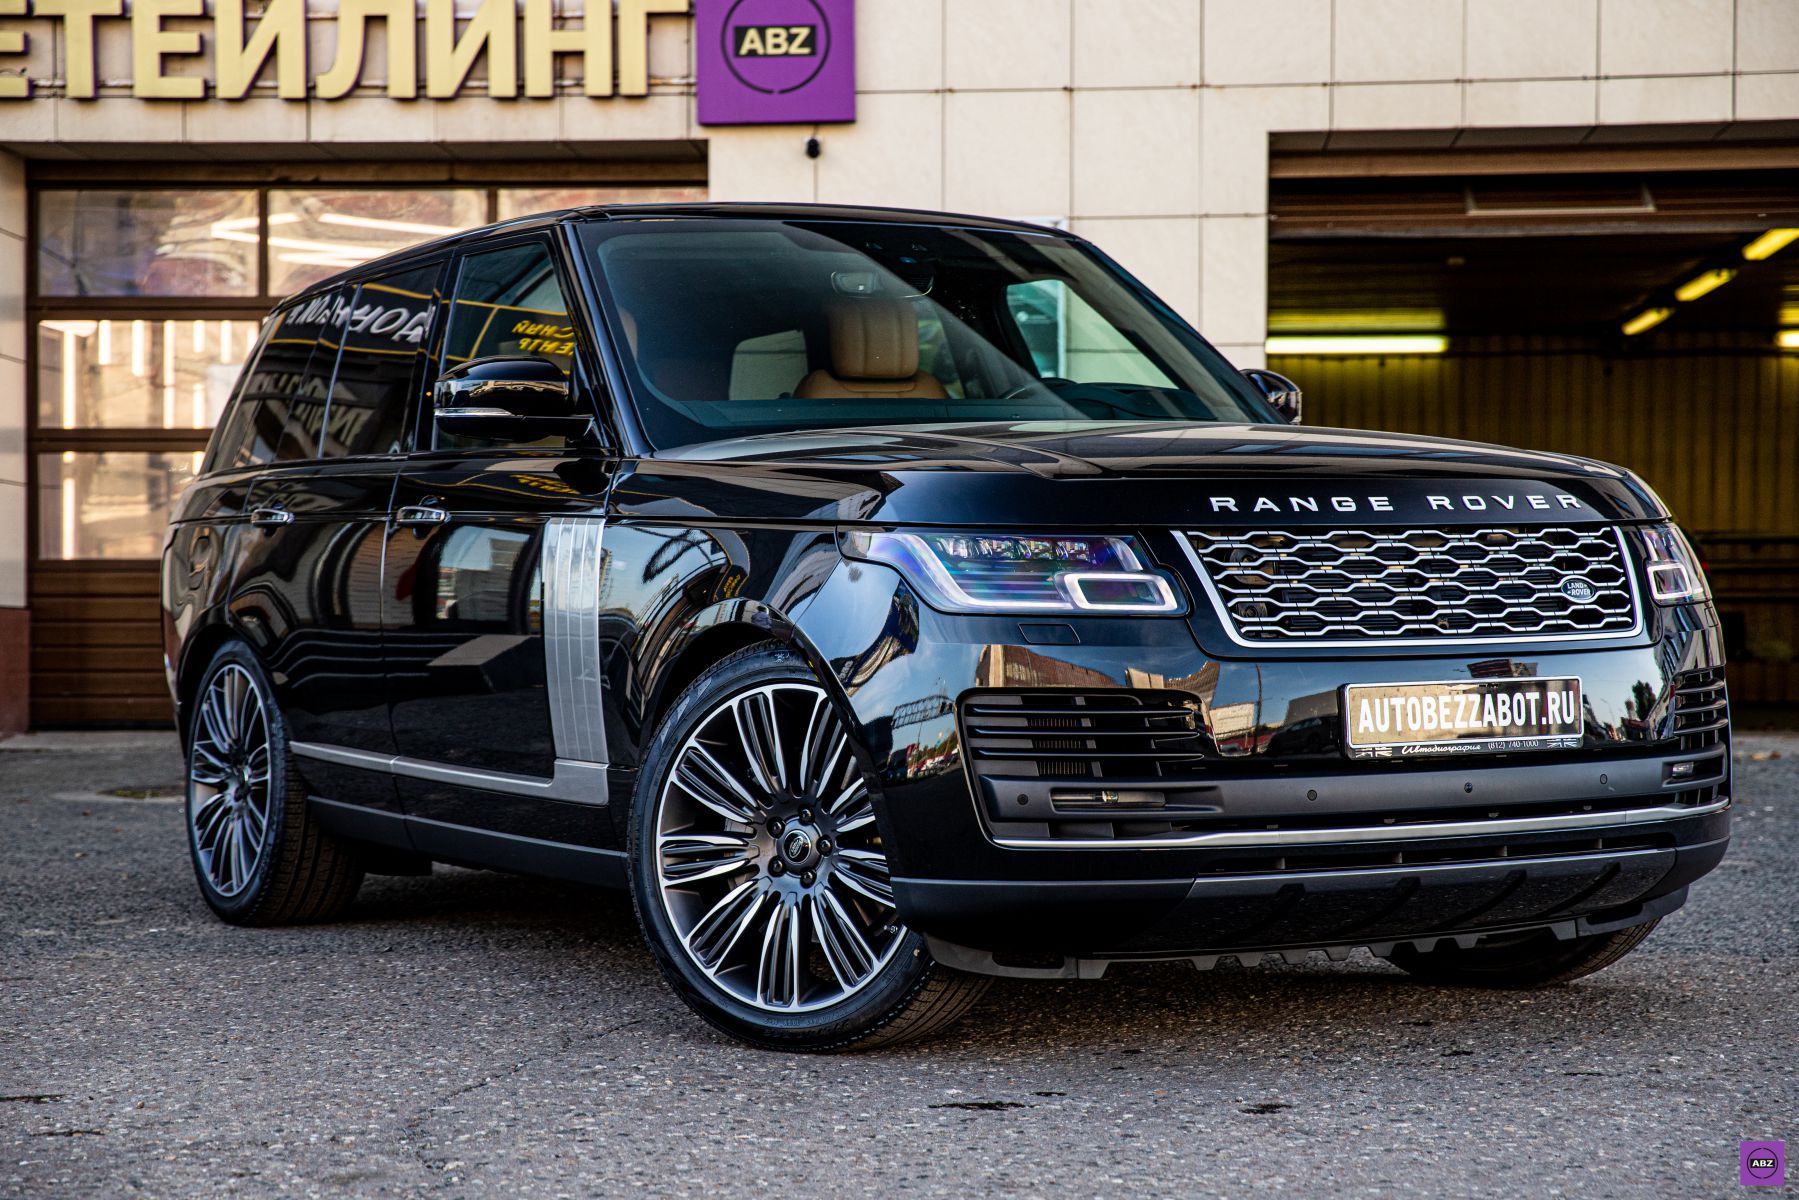 Фото Путешествие Range Rover Vogue Se из Петербурга в Москву для защиты в АвтоБезЗабот